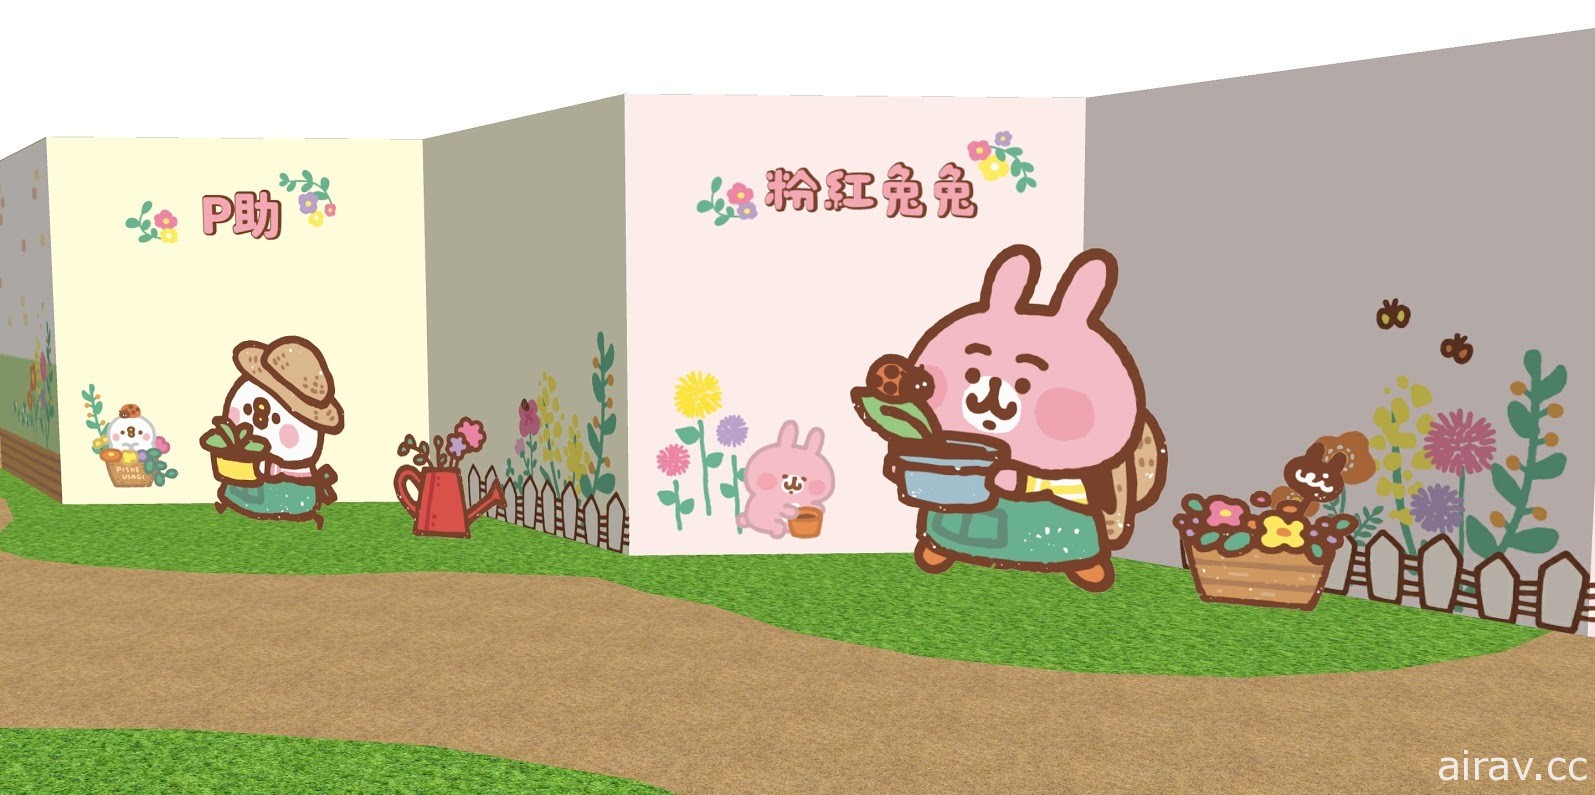 超萌小農回歸《卡娜赫拉的小動物》小農系列主題店高雄台北 8/14 起陸續登場